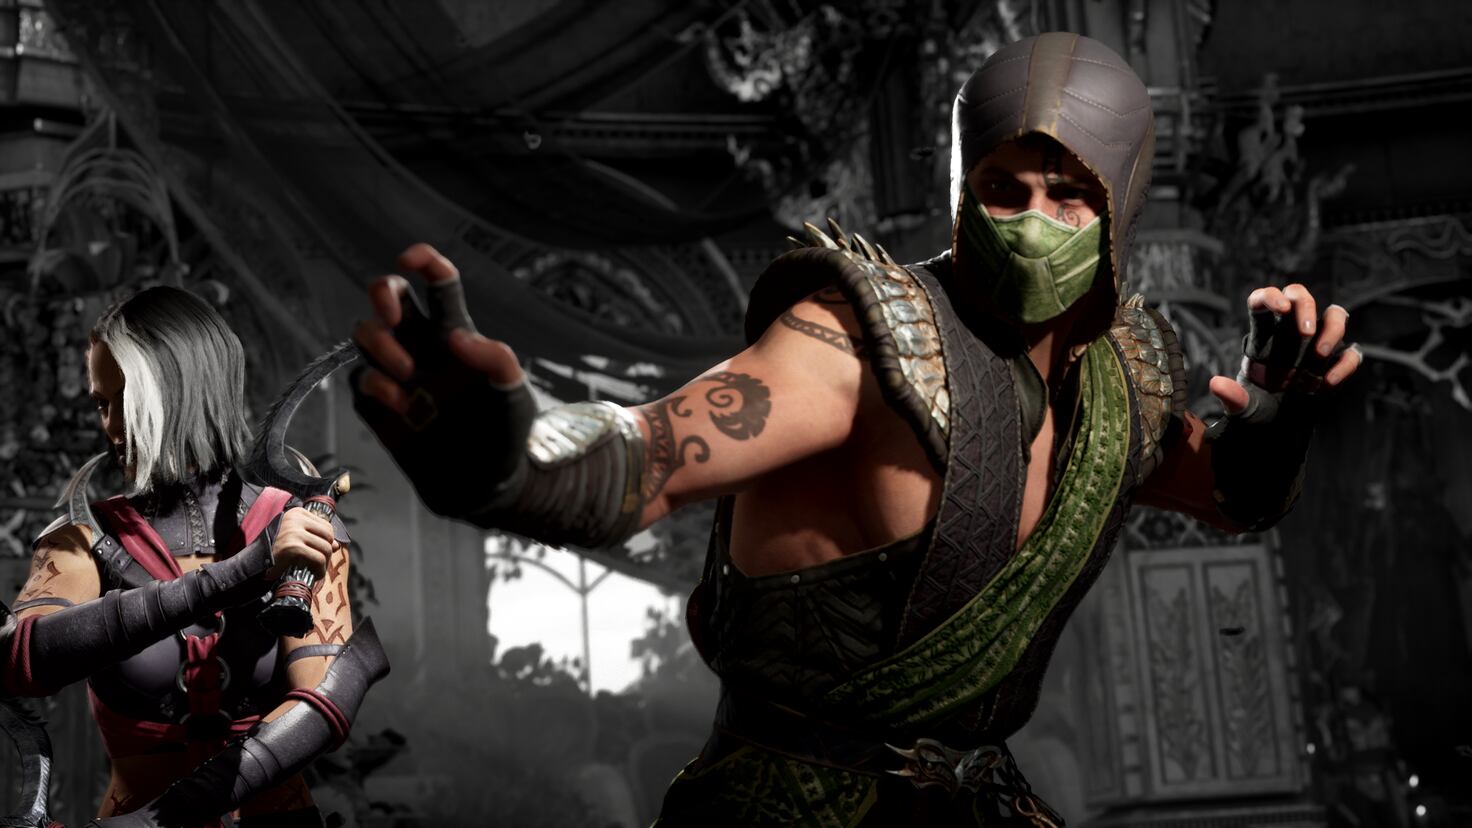 Mortal Kombat 1 confirms Smoke and Rain as returning playable